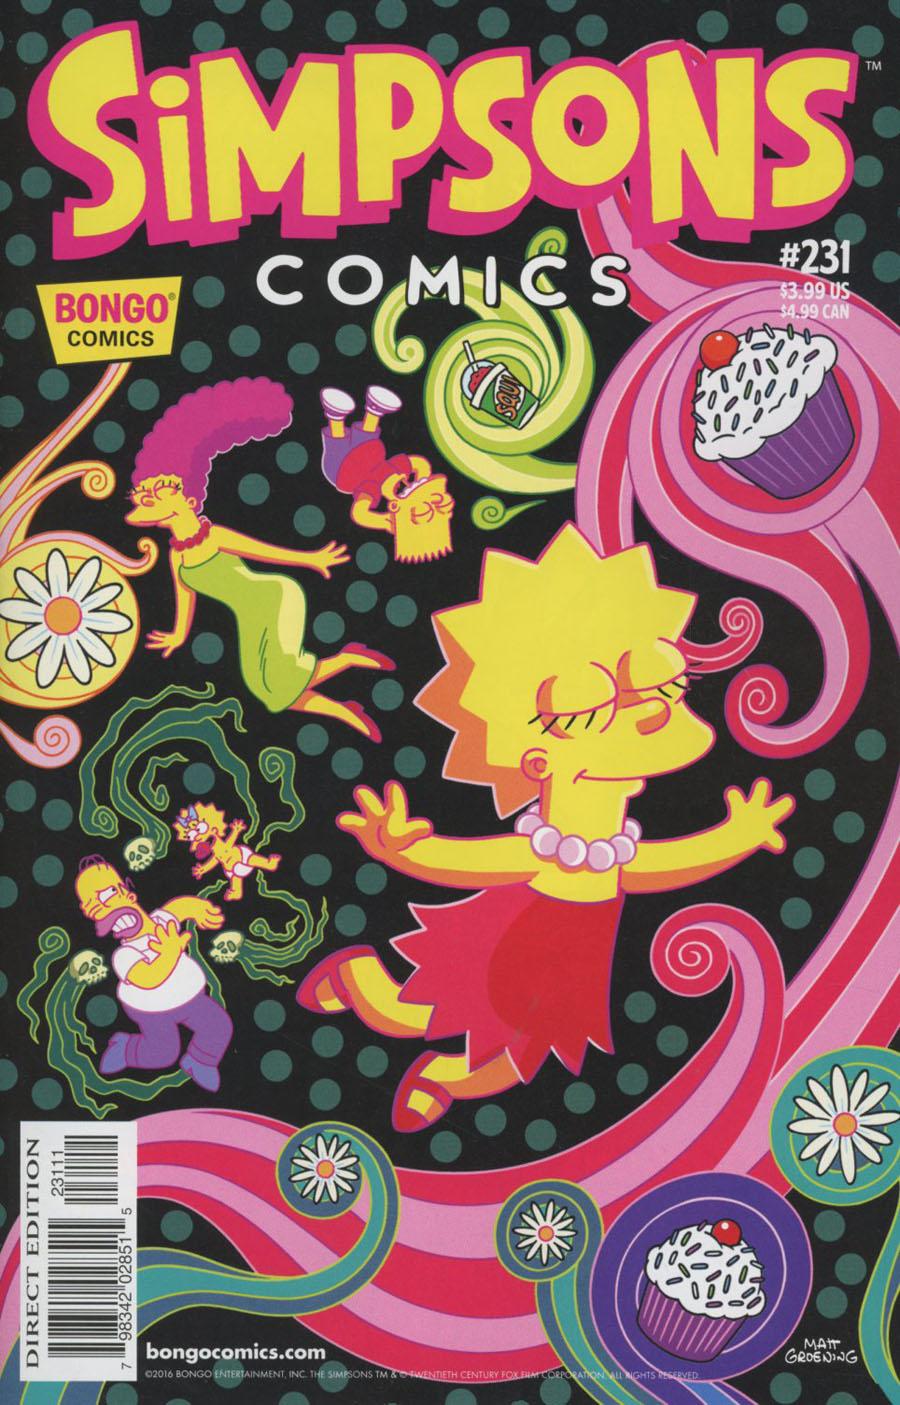 Simpsons Comics Vol. 1 #231